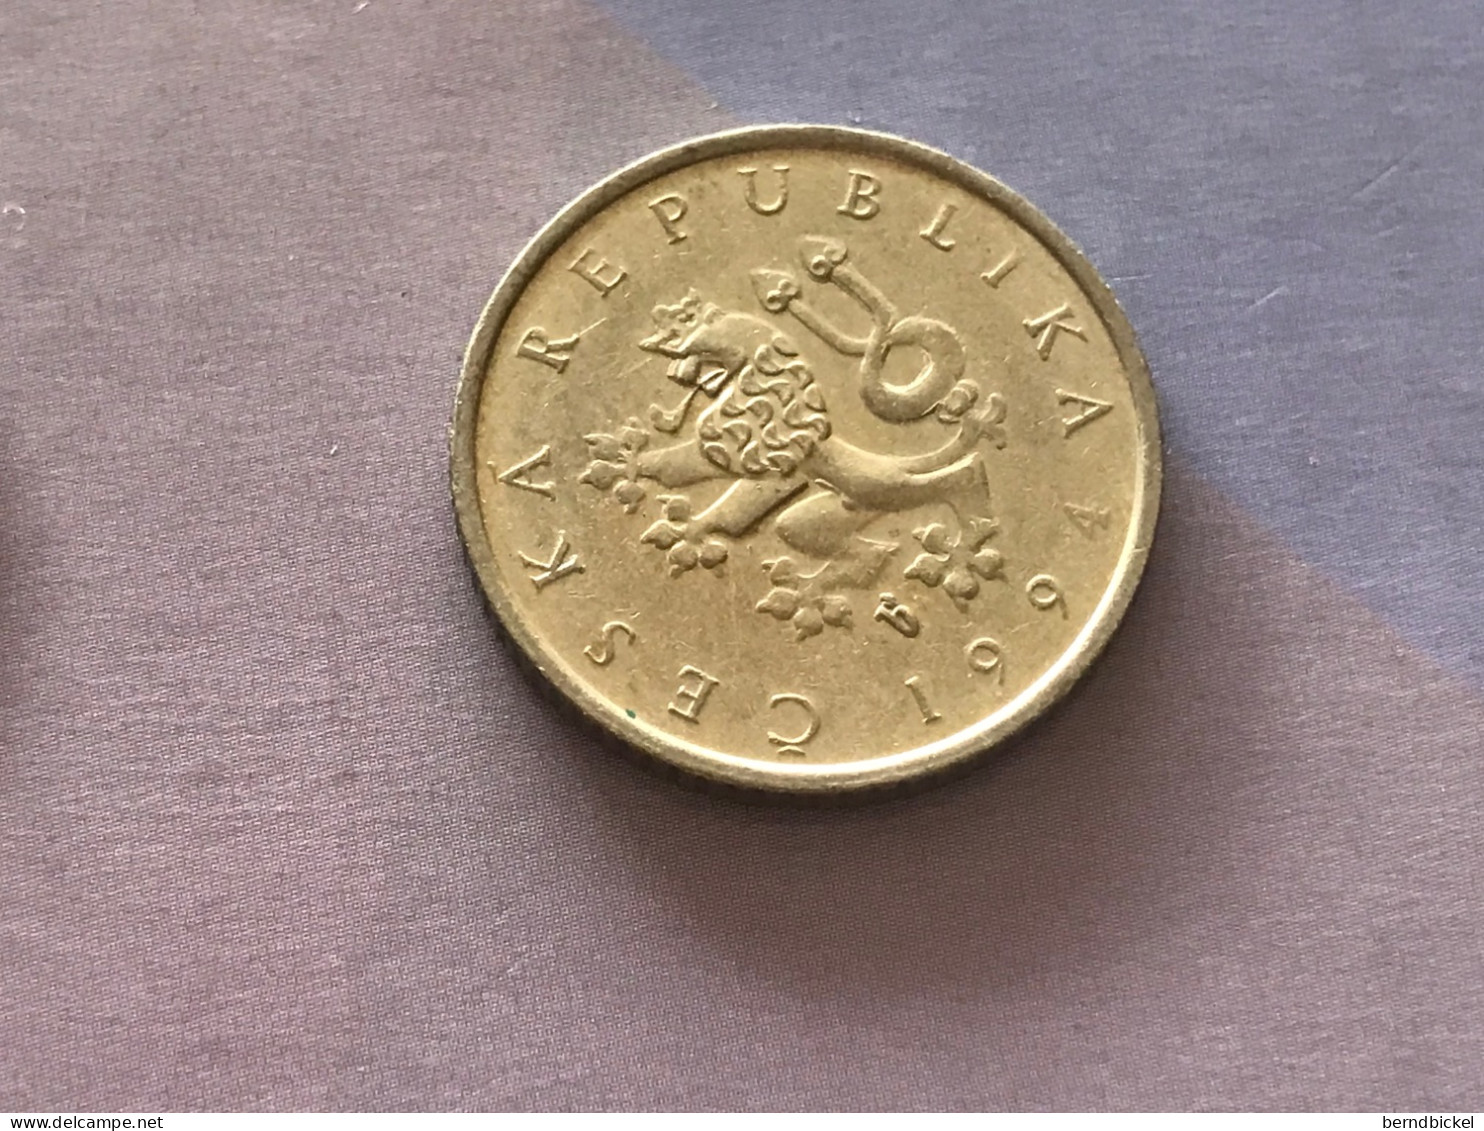 Münze Münzen Umlaufmünze Tschechische Republik 1 Krone 1994 - Tschechische Rep.